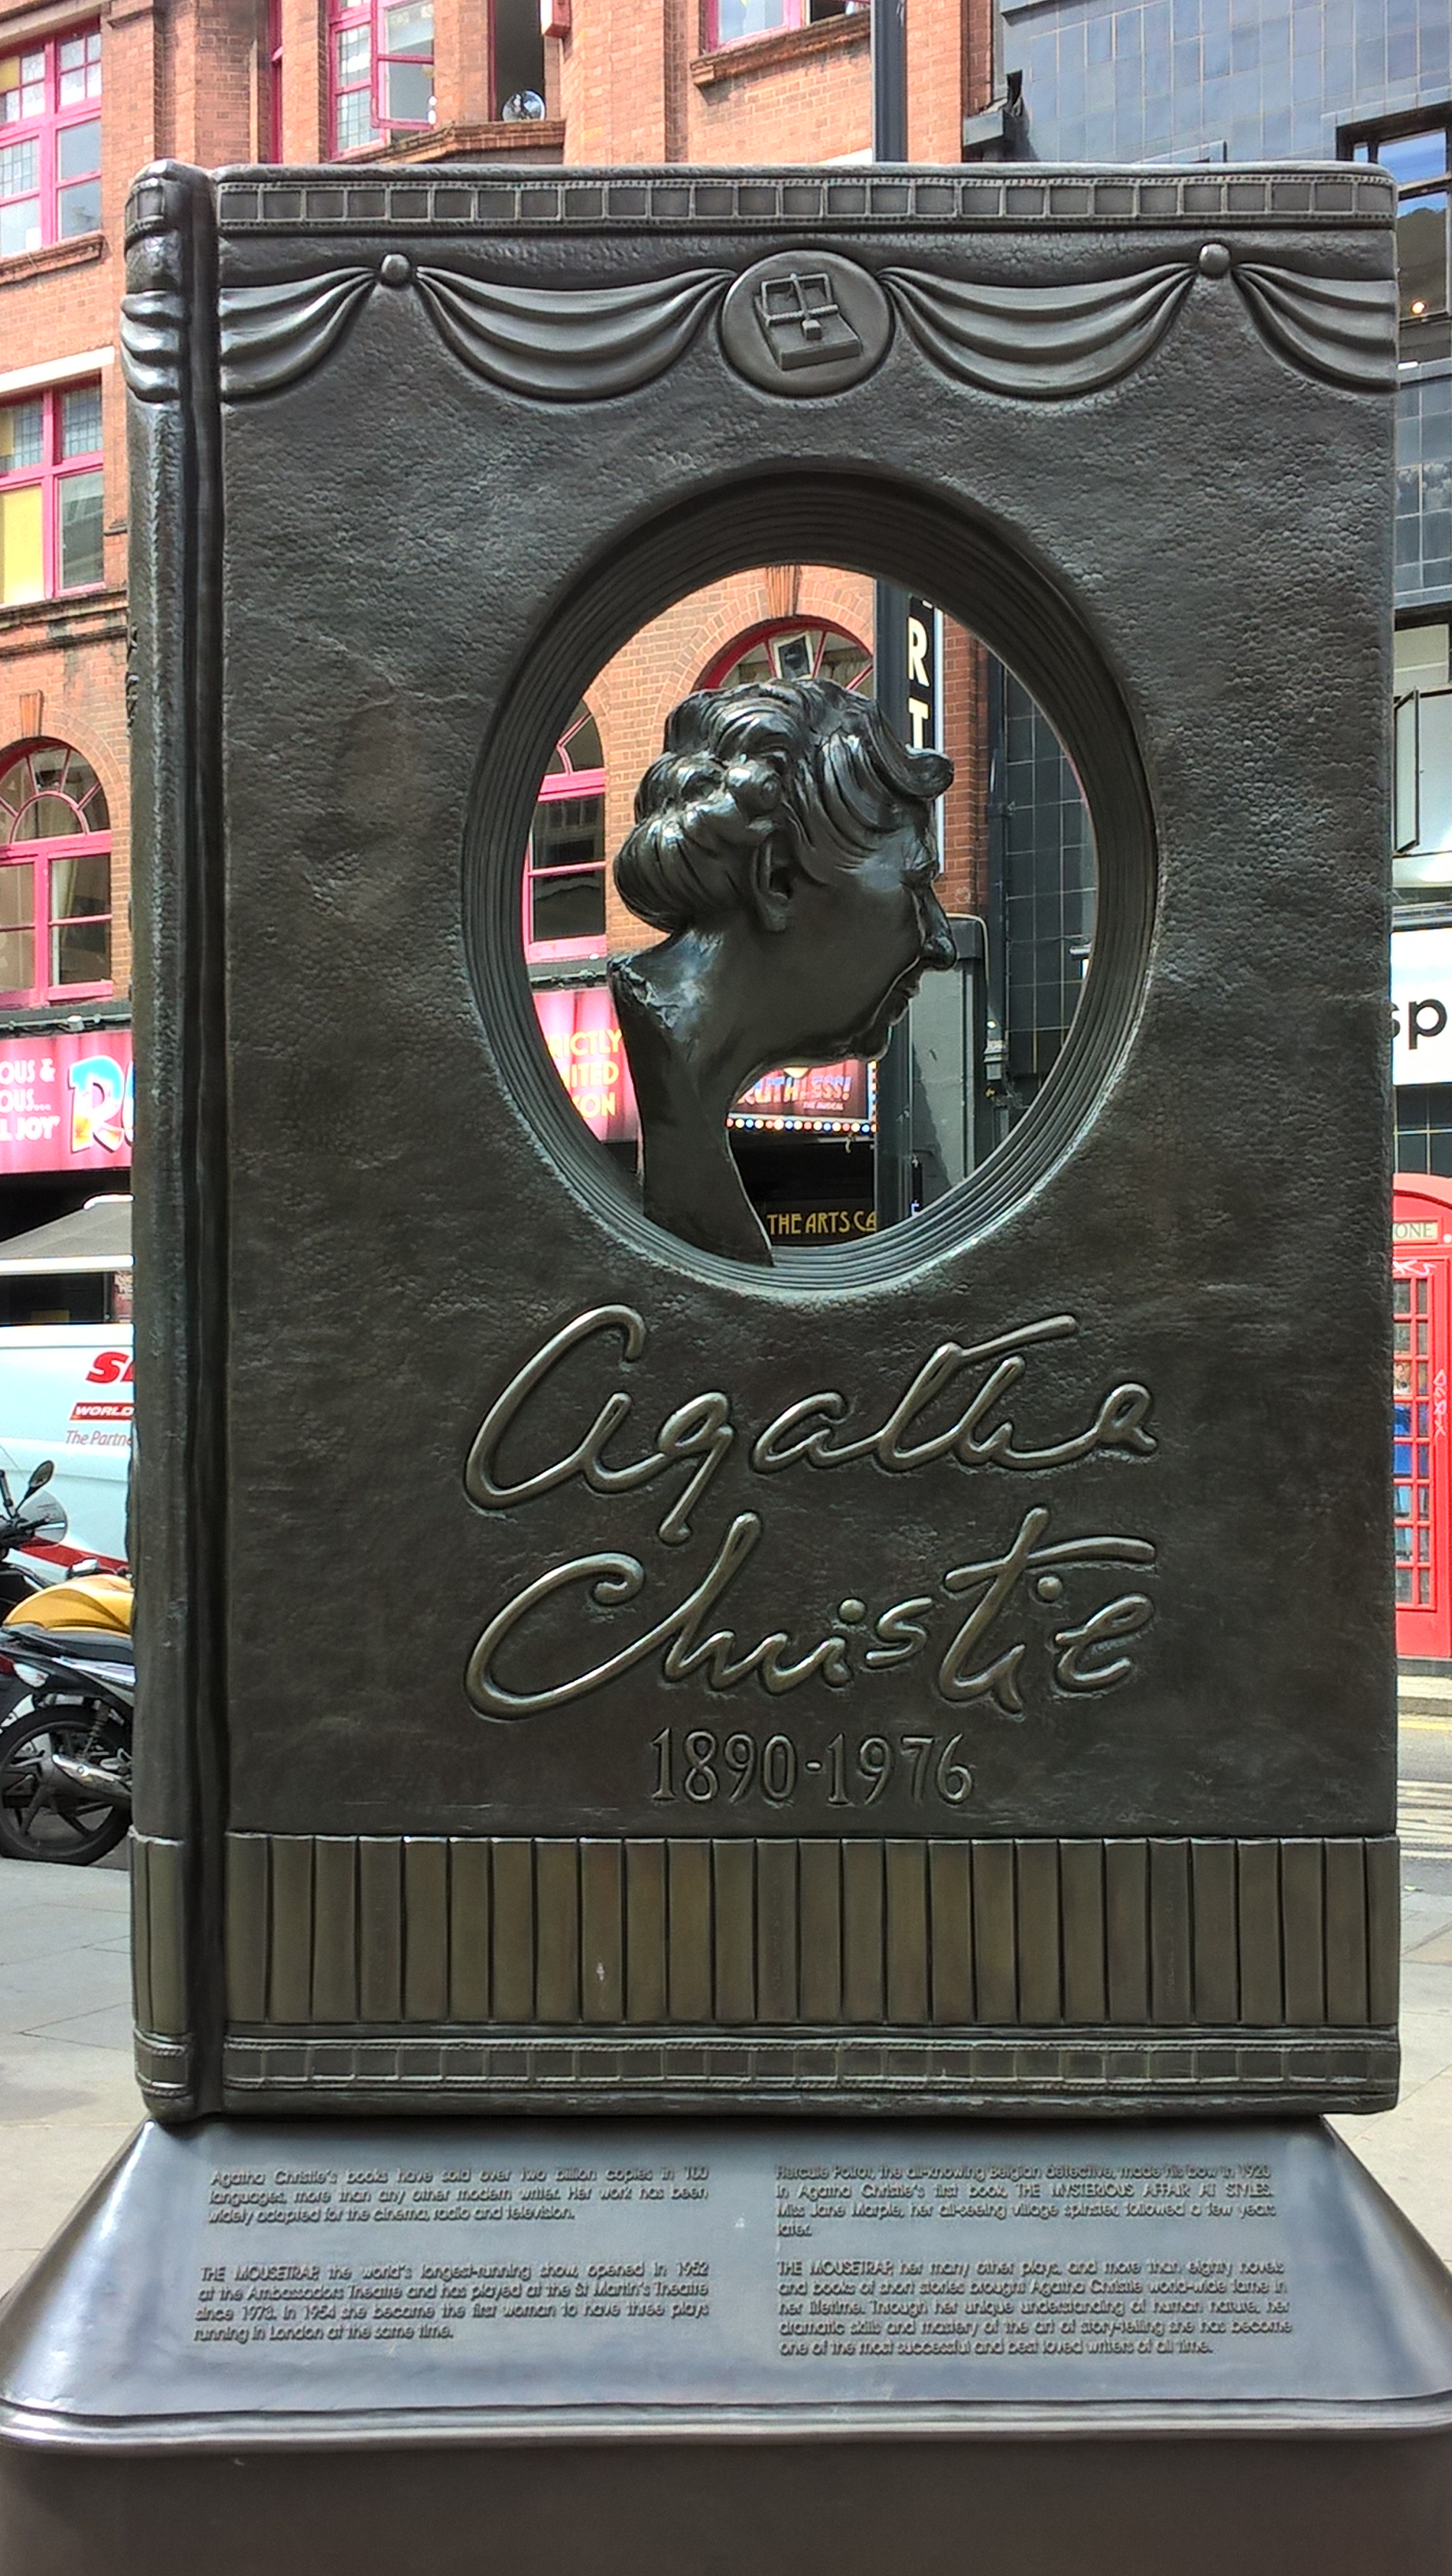  Agatha Christie memorial by Juliamaud